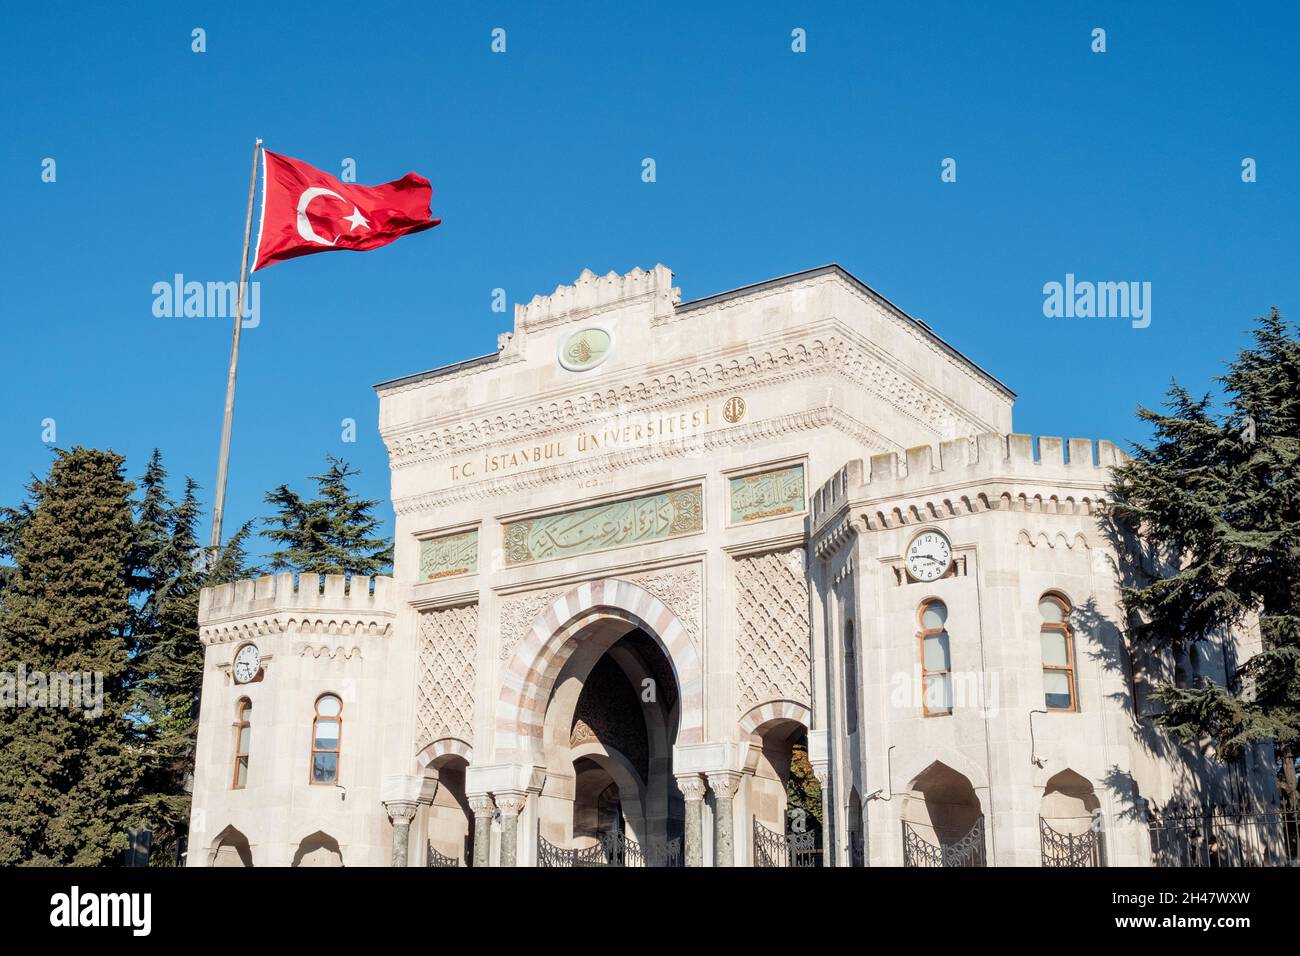 ISTANBUL - Oct 22: L'ingresso principale dell'Università di Istanbul. Esterno storico, facciata dell'Università di Istanbul o İstanbul Üniversitesi durante il sole Foto Stock